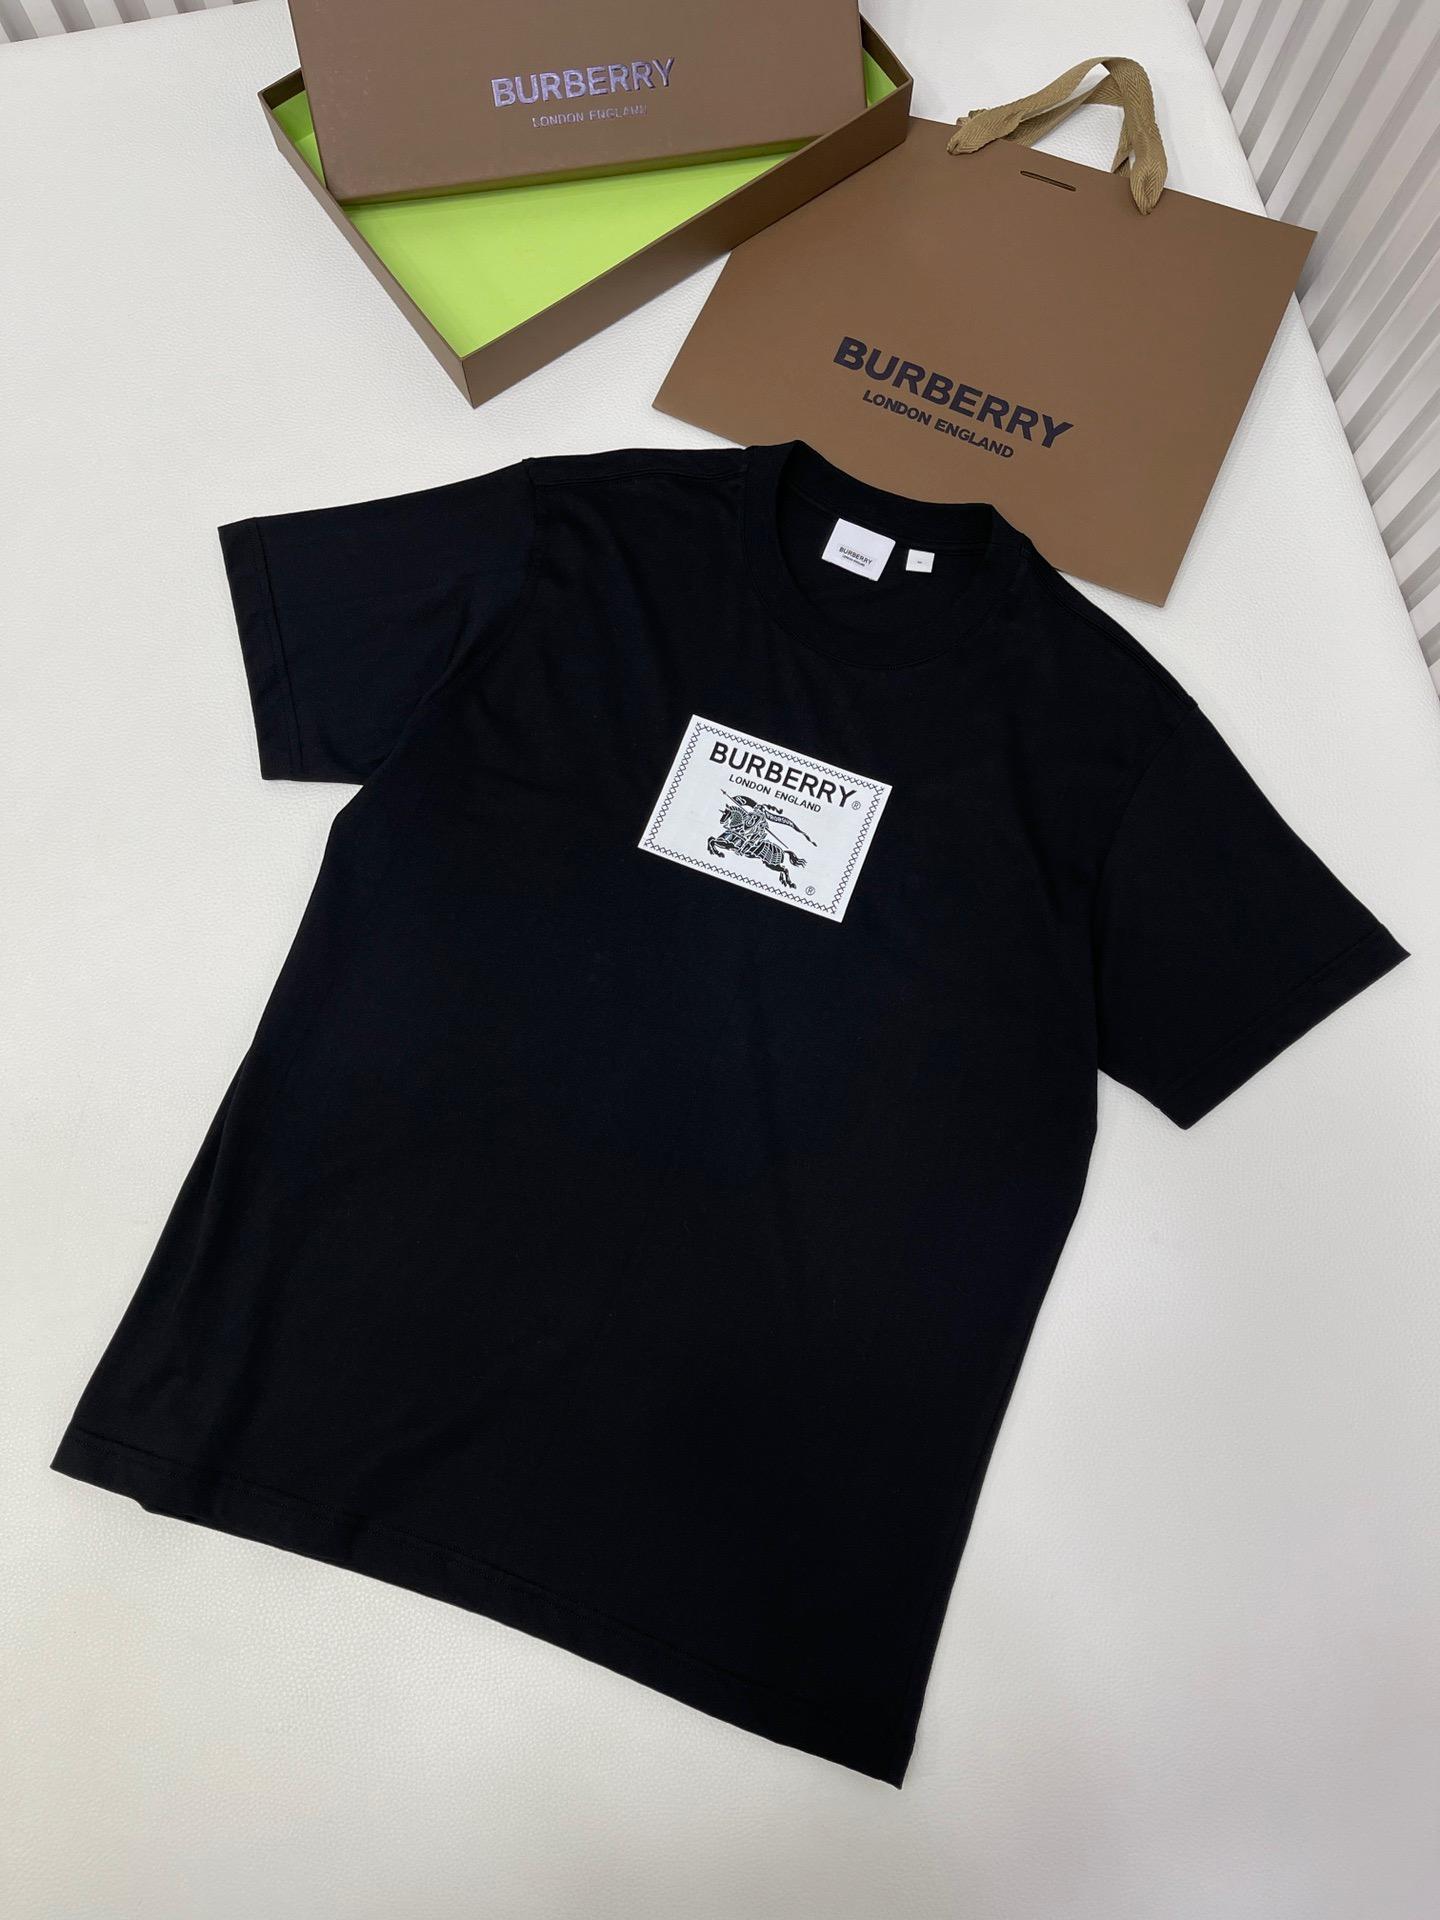 prorsum-label-cotton-t-shirt-6600_16845013884-1000